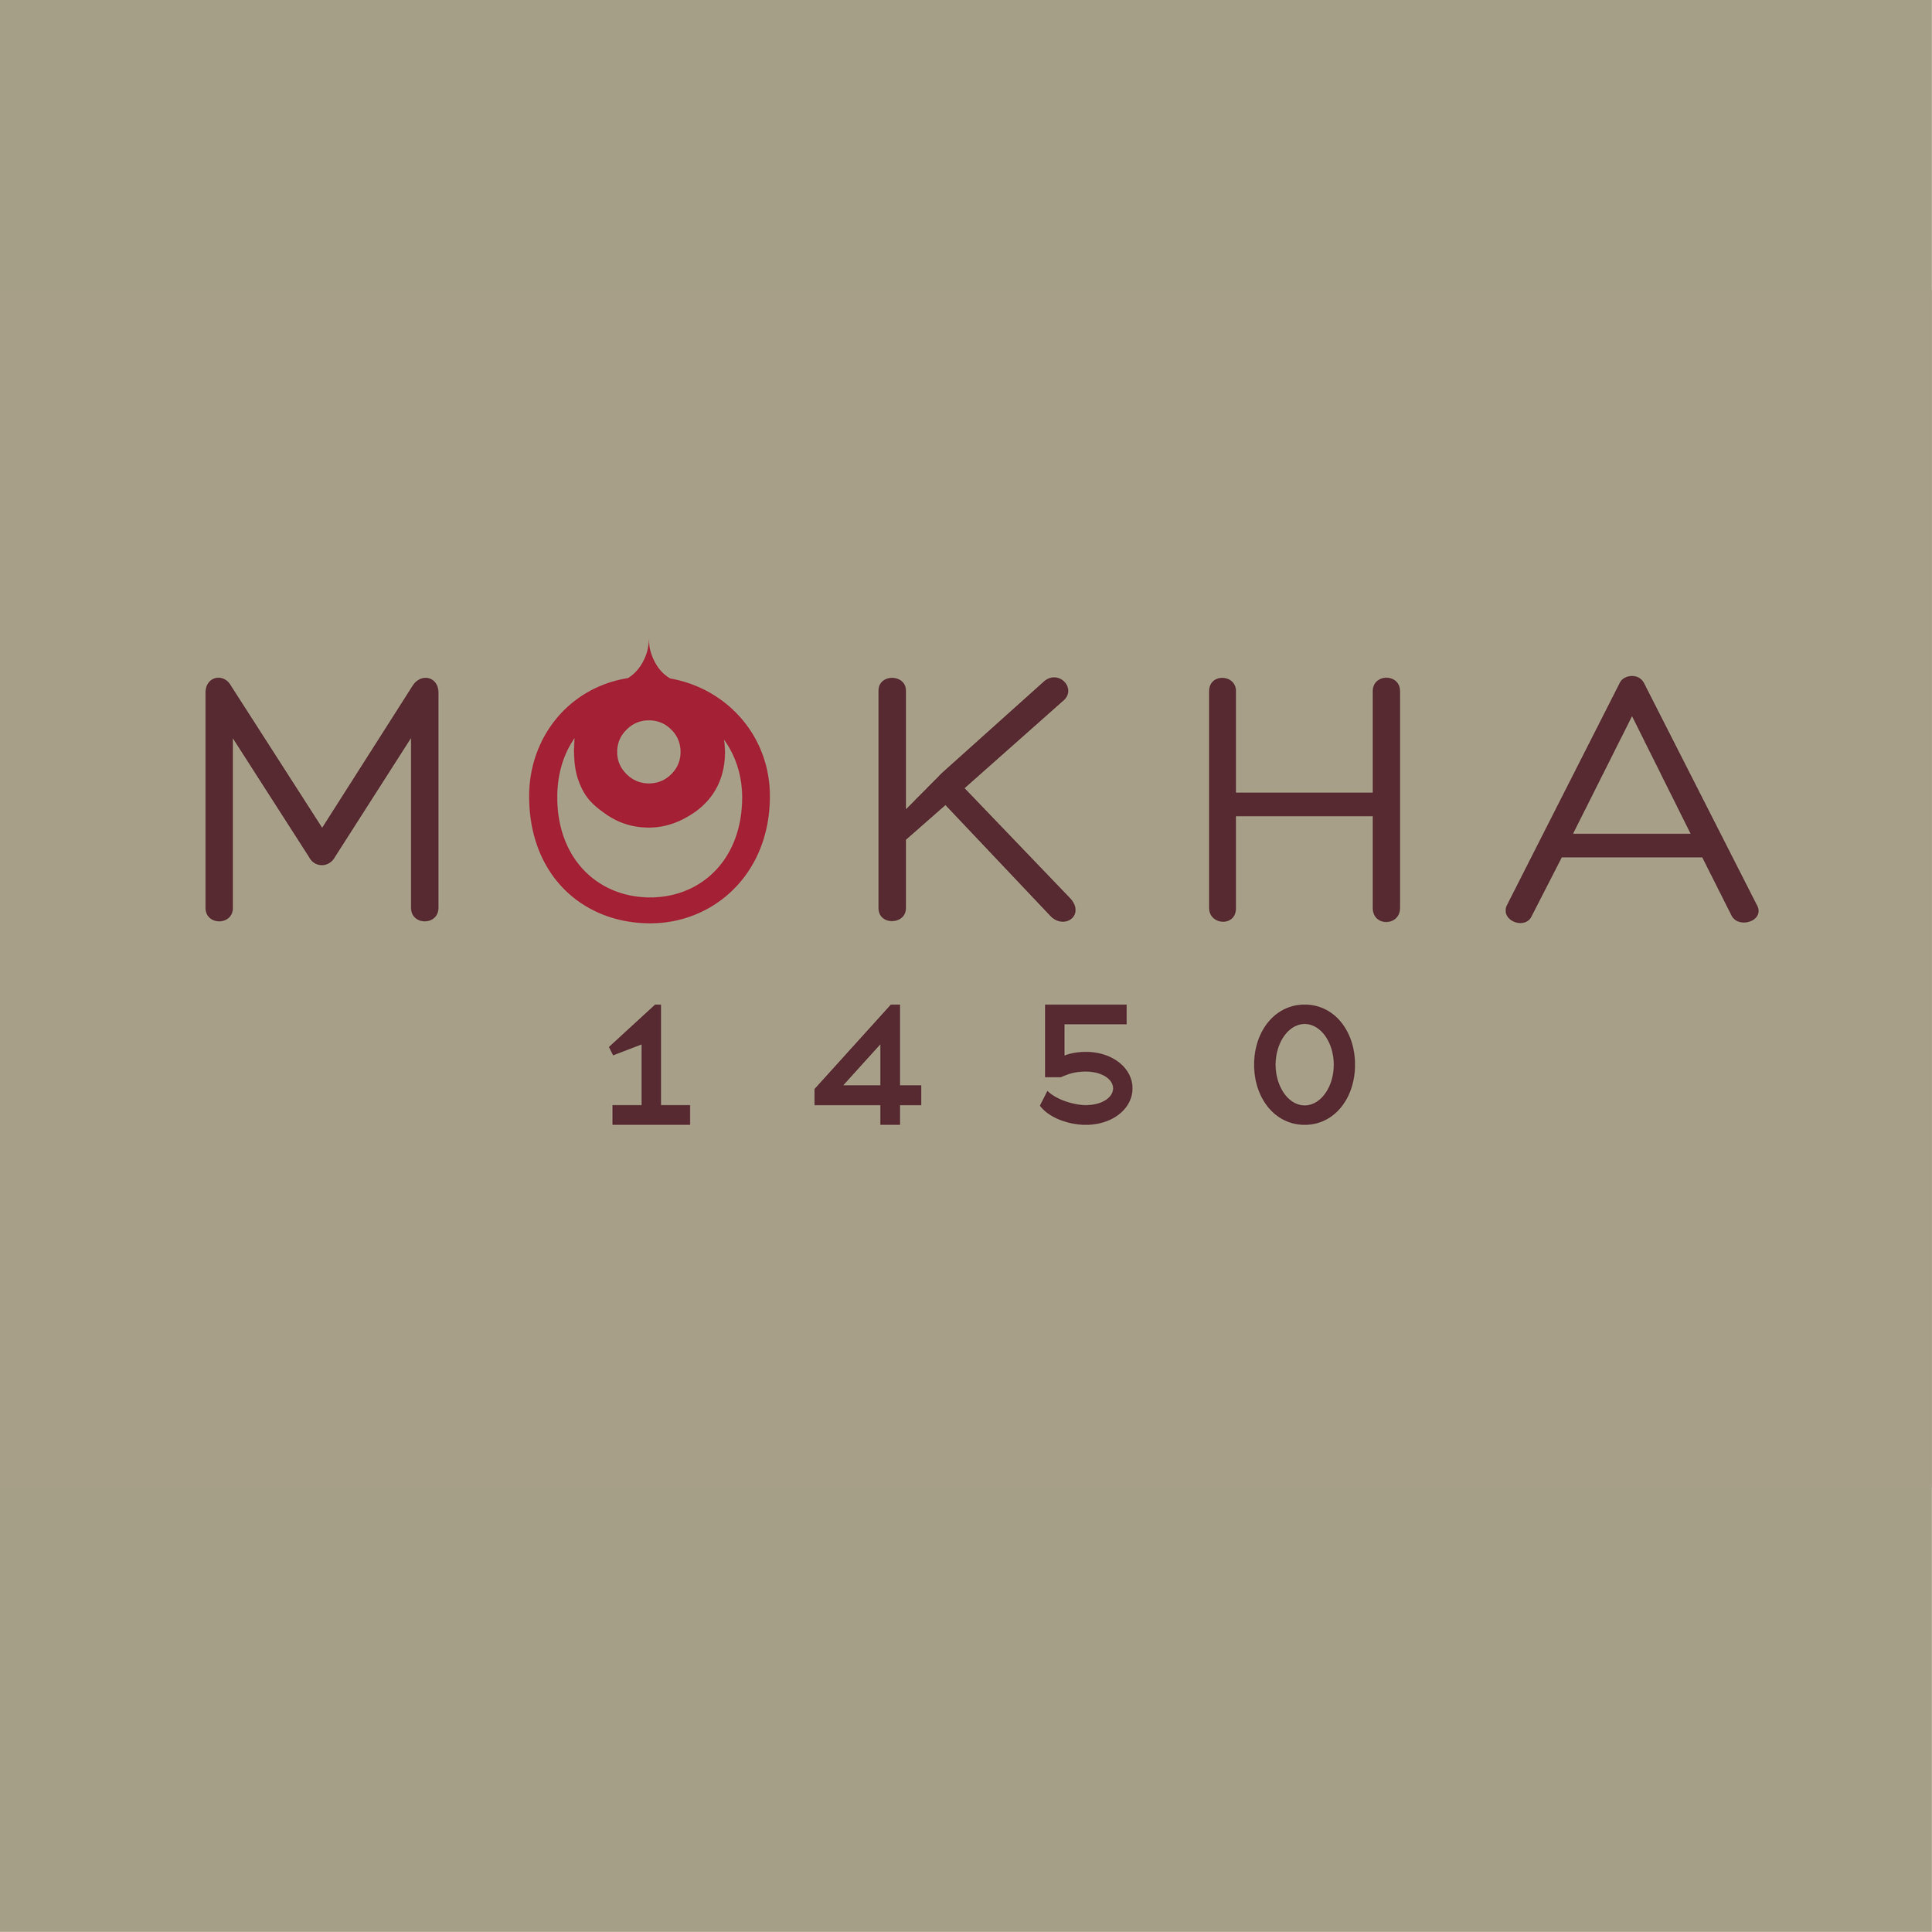 MOKHA 1450 WEB.jpg